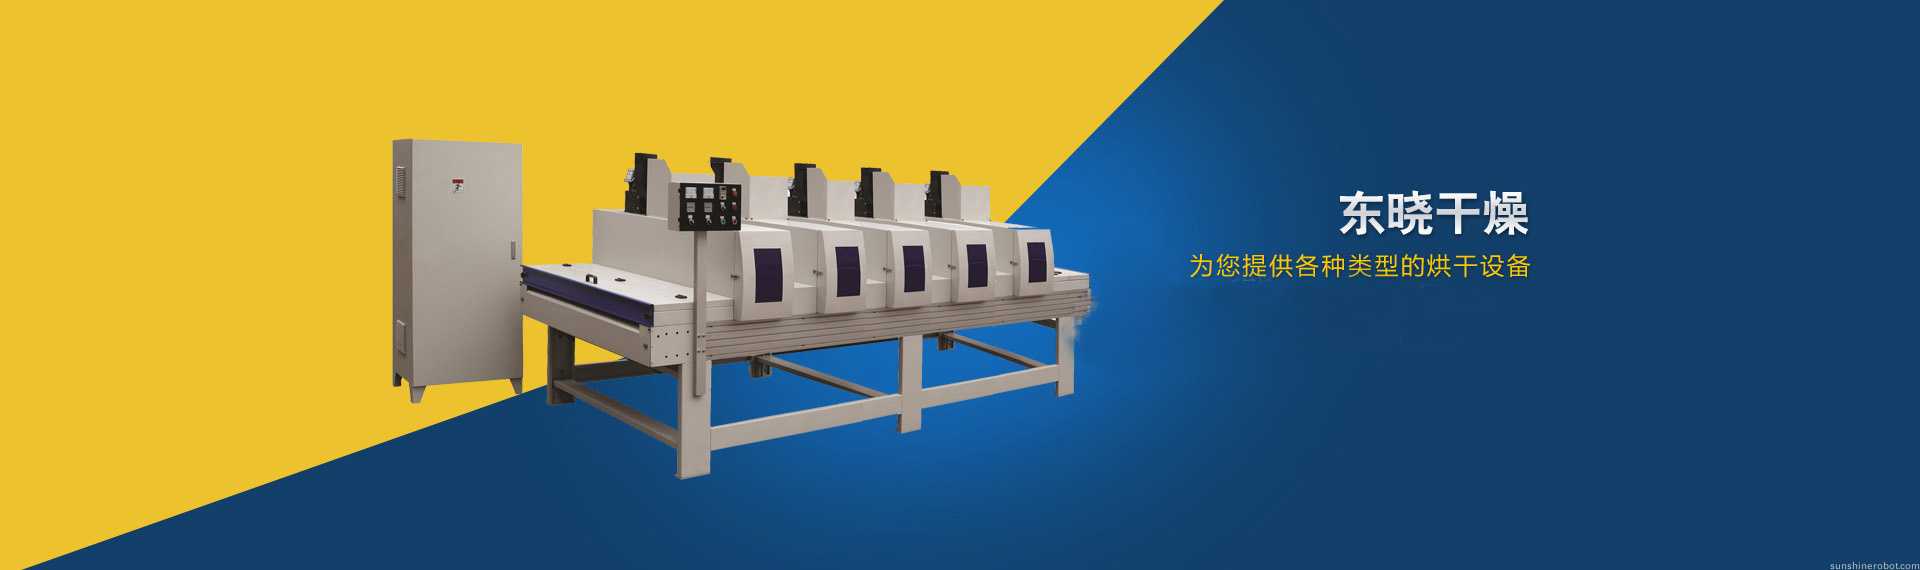 江阴市东晓干燥设备有限公司主要产品：压力喷雾干燥塔、振动流化床干燥器、水浴除尘器